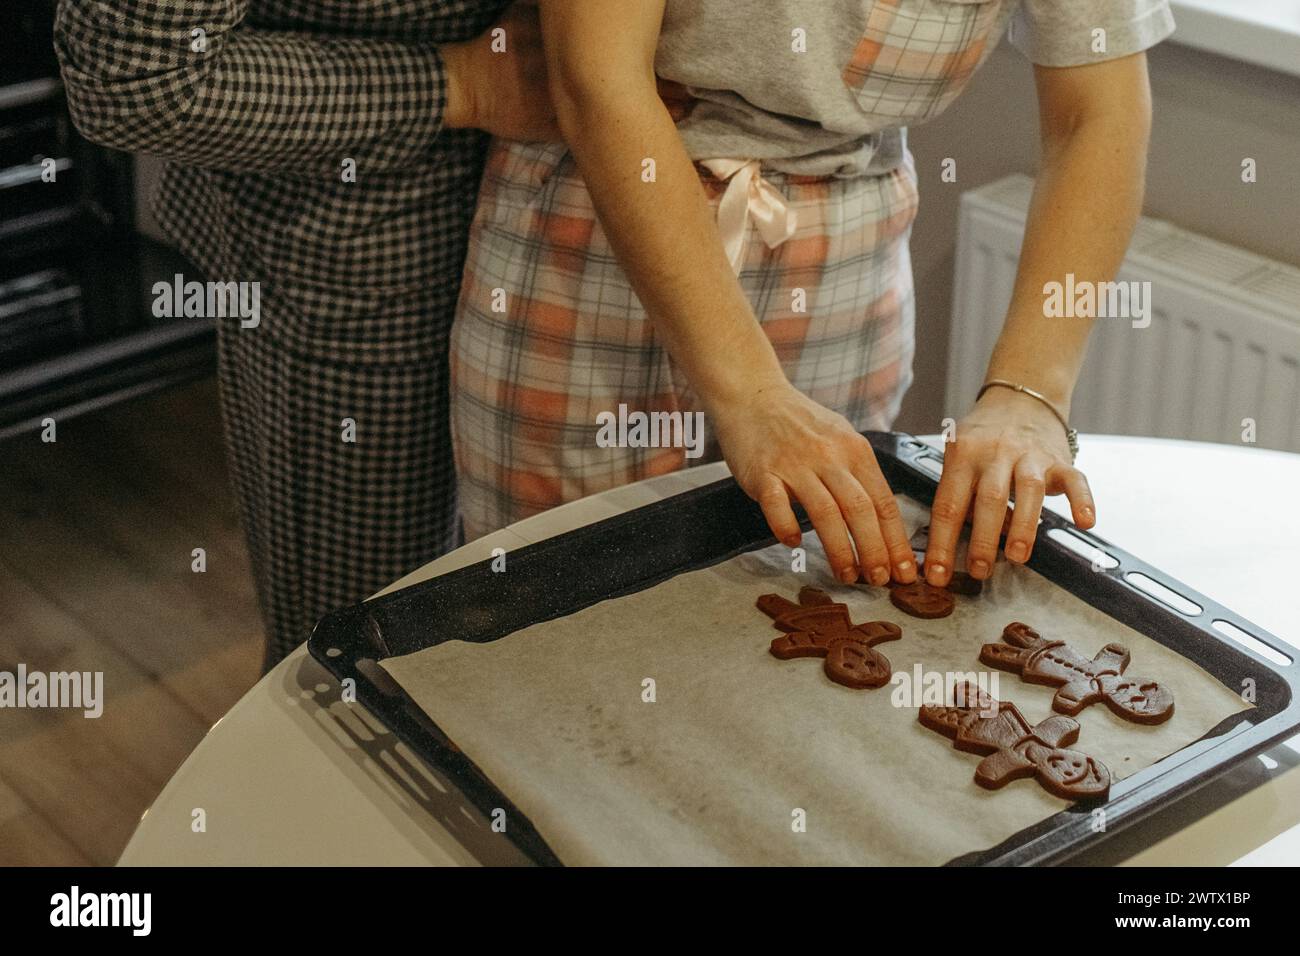 Due persone sono attivamente coinvolte nel processo di preparazione dei biscotti in un ambiente di cucina. Stanno mescolando ingredienti, modellando l'impasto e posizionando il co Foto Stock